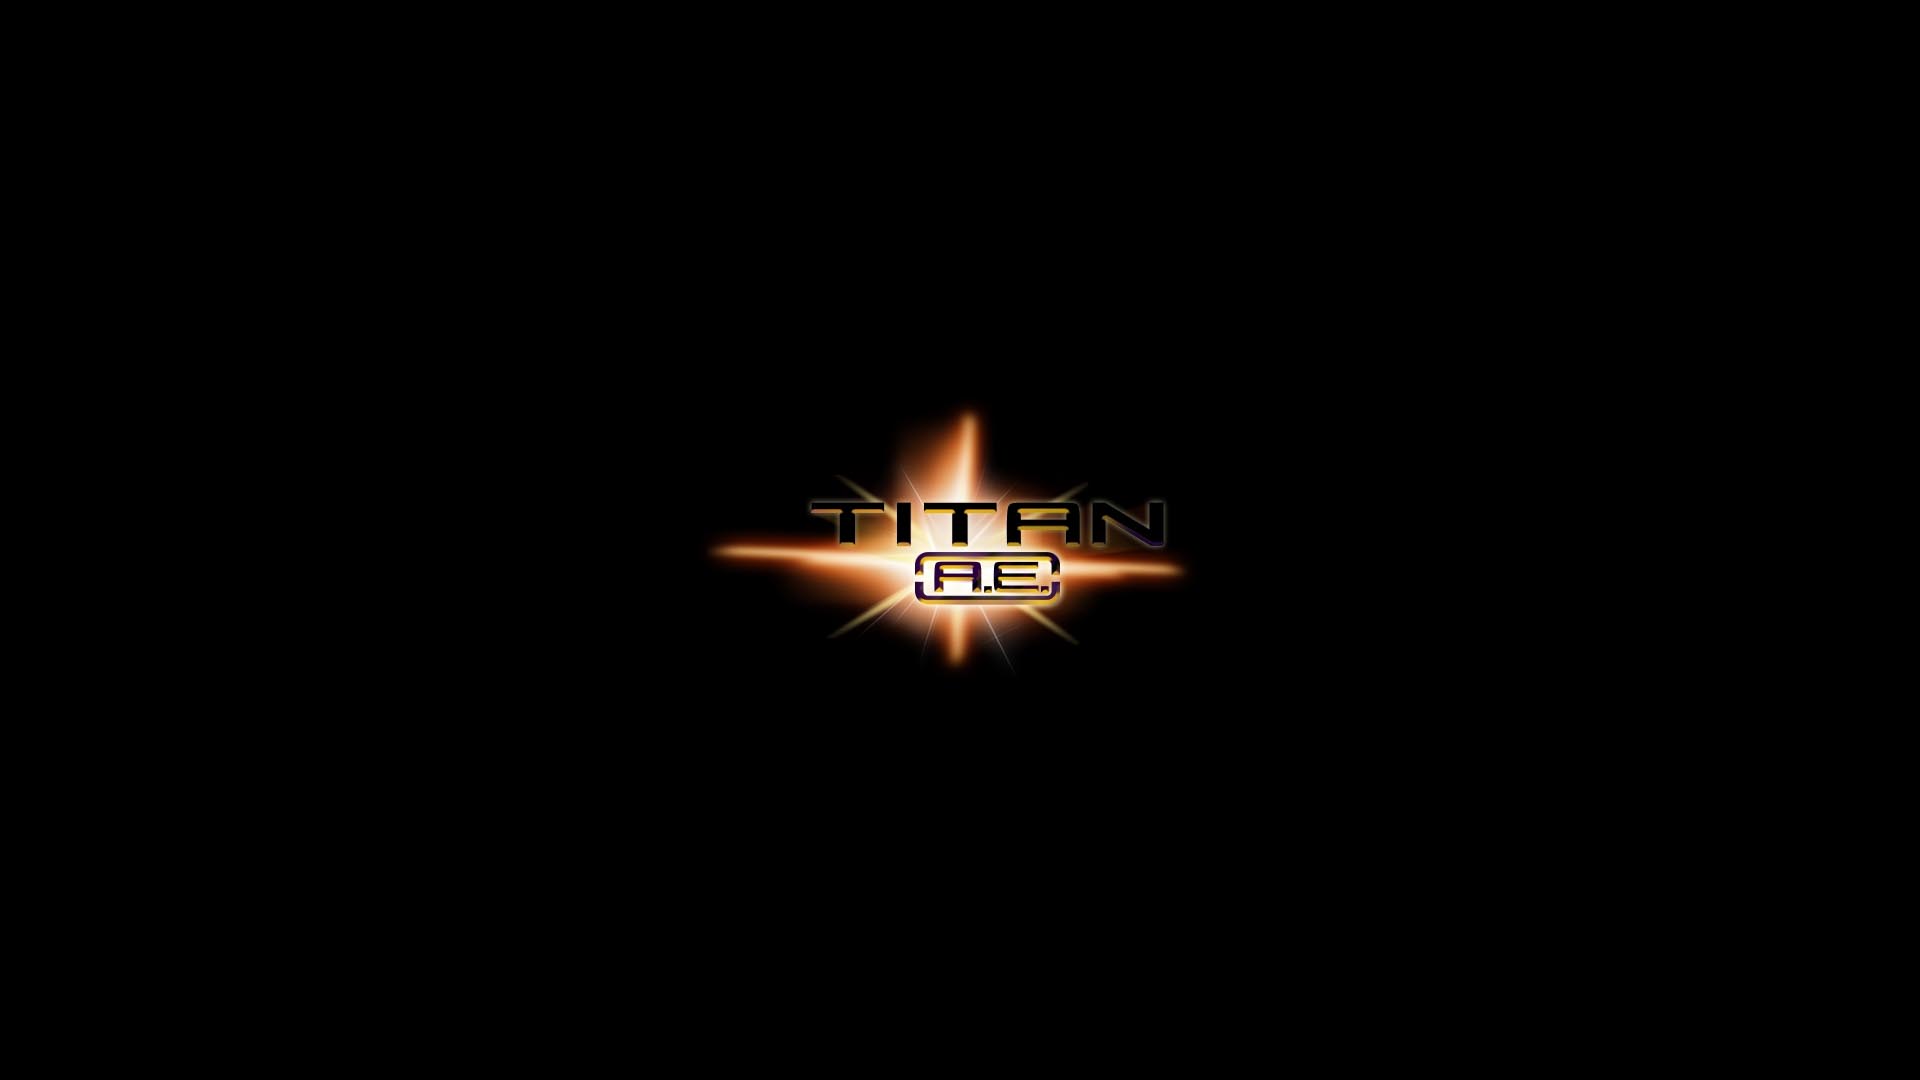 Movie titan a.E. HD Wallpaper | Background Image